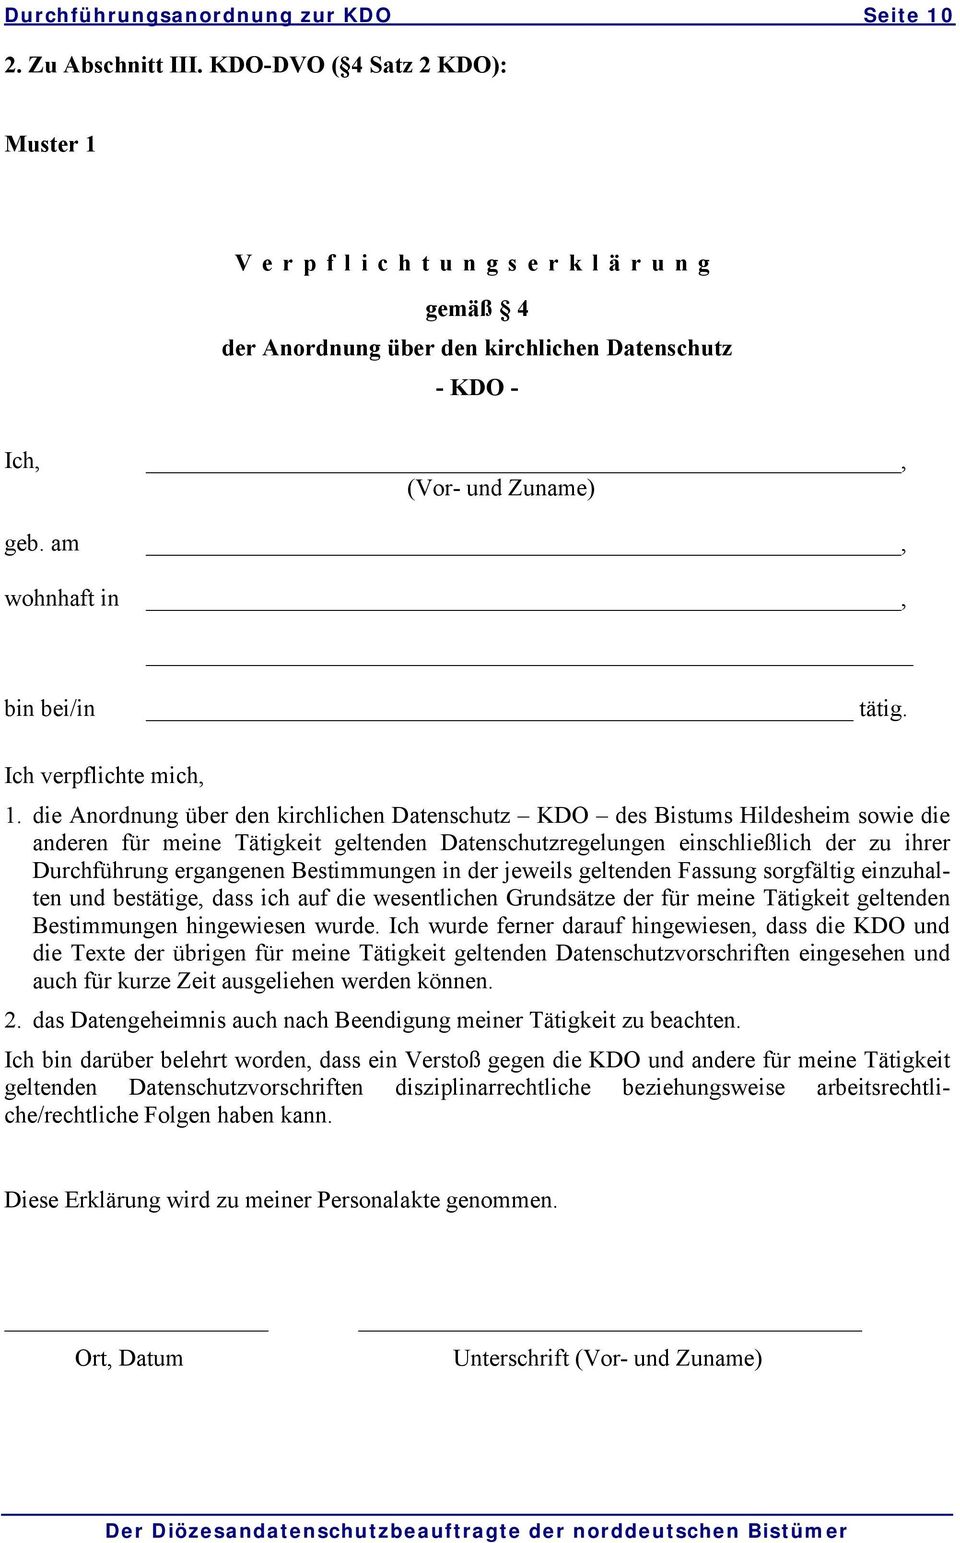 die Anordnung über den kirchlichen Datenschutz KDO des Bistums Hildesheim sowie die anderen für meine Tätigkeit geltenden Datenschutzregelungen einschließlich der zu ihrer Durchführung ergangenen